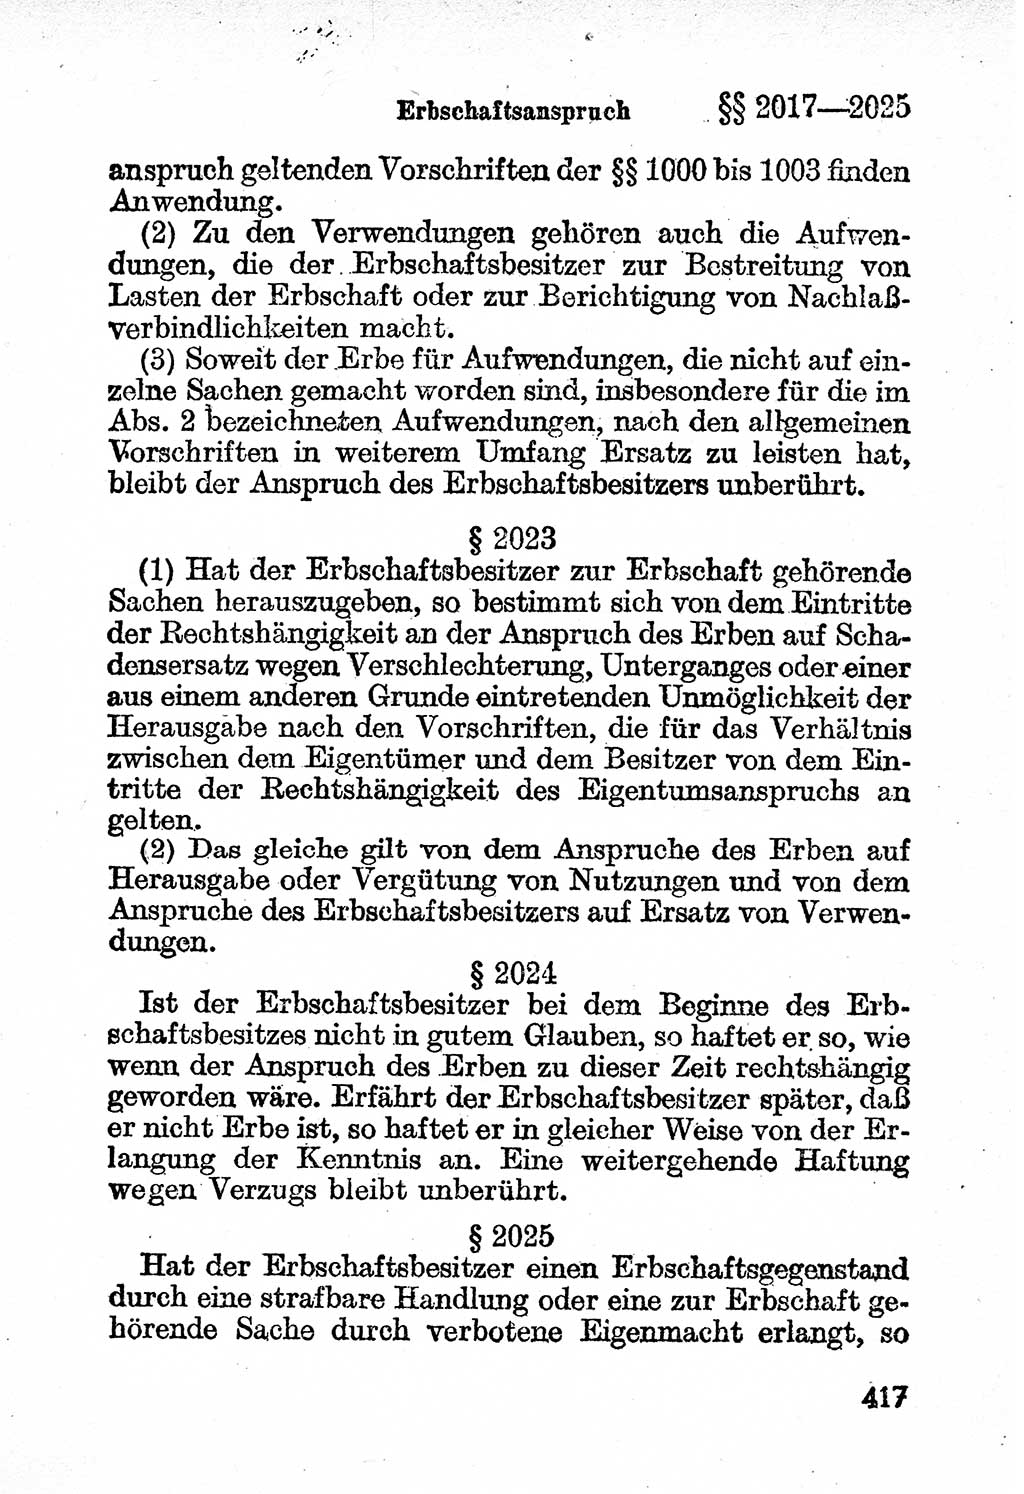 Bürgerliches Gesetzbuch (BGB) nebst wichtigen Nebengesetzen [Deutsche Demokratische Republik (DDR)] 1956, Seite 417 (BGB Nebenges. DDR 1956, S. 417)